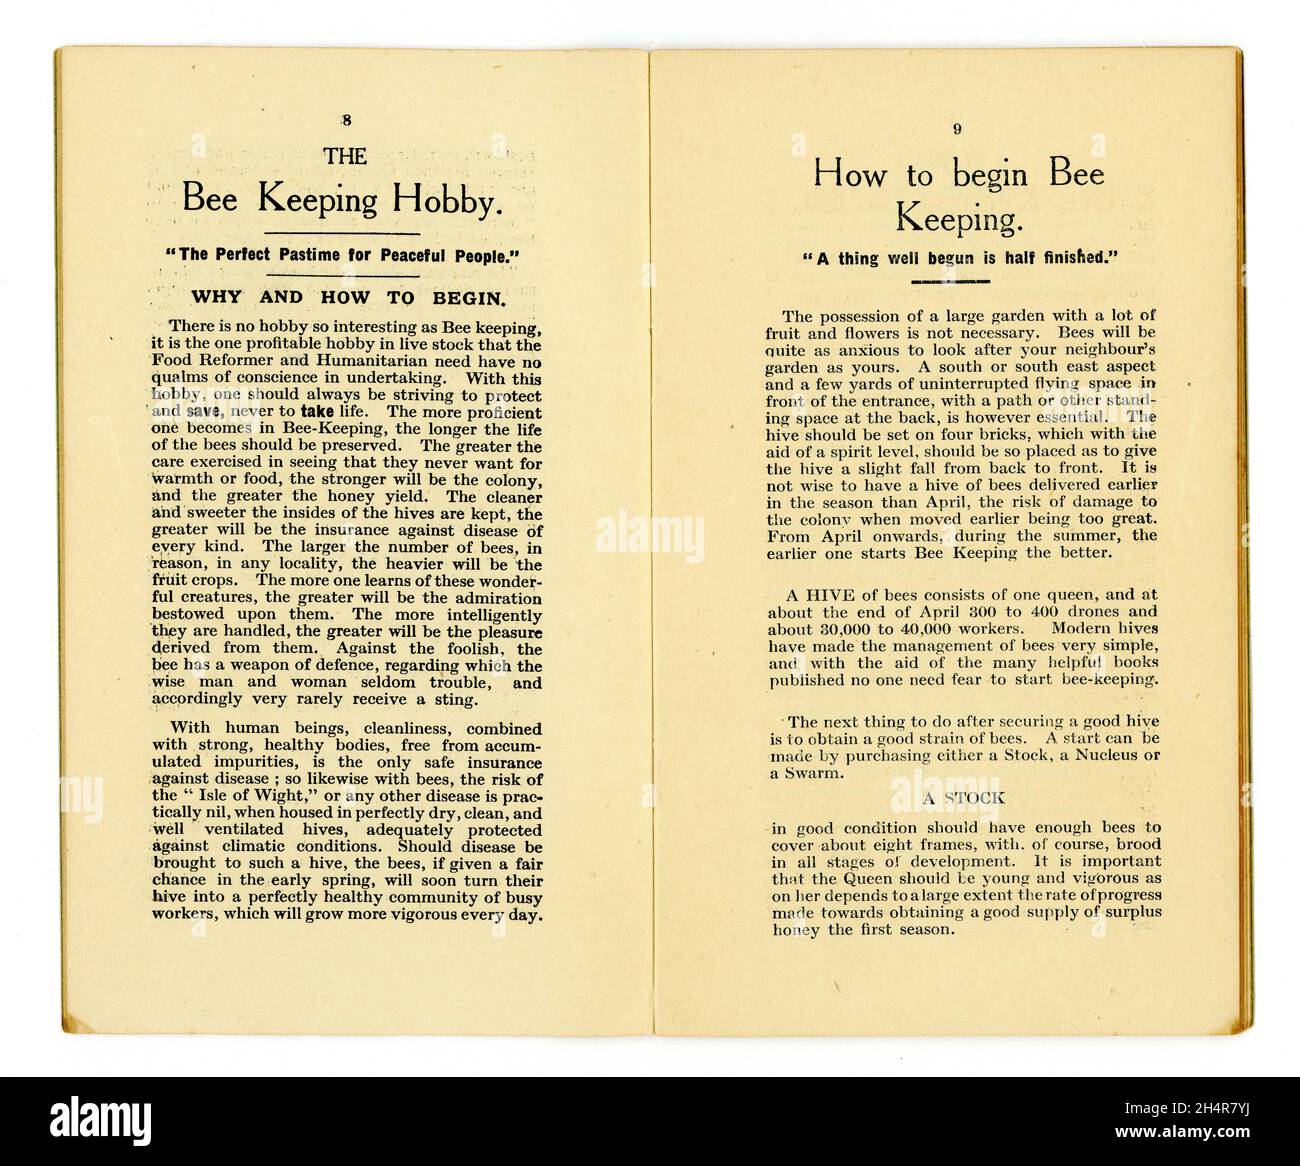 Pagine interne - hobby di conservazione delle api, come tenere le api - Salute dalla biblioteca alimentare no 12, - questo nella serie intitolata Honey e The Bee, da famoso scrittore di salute alimentare del tempo e proprietario del primo negozio di alimenti per la salute - James Henry Cook. Pubblicato Birmingham,1927 Foto Stock